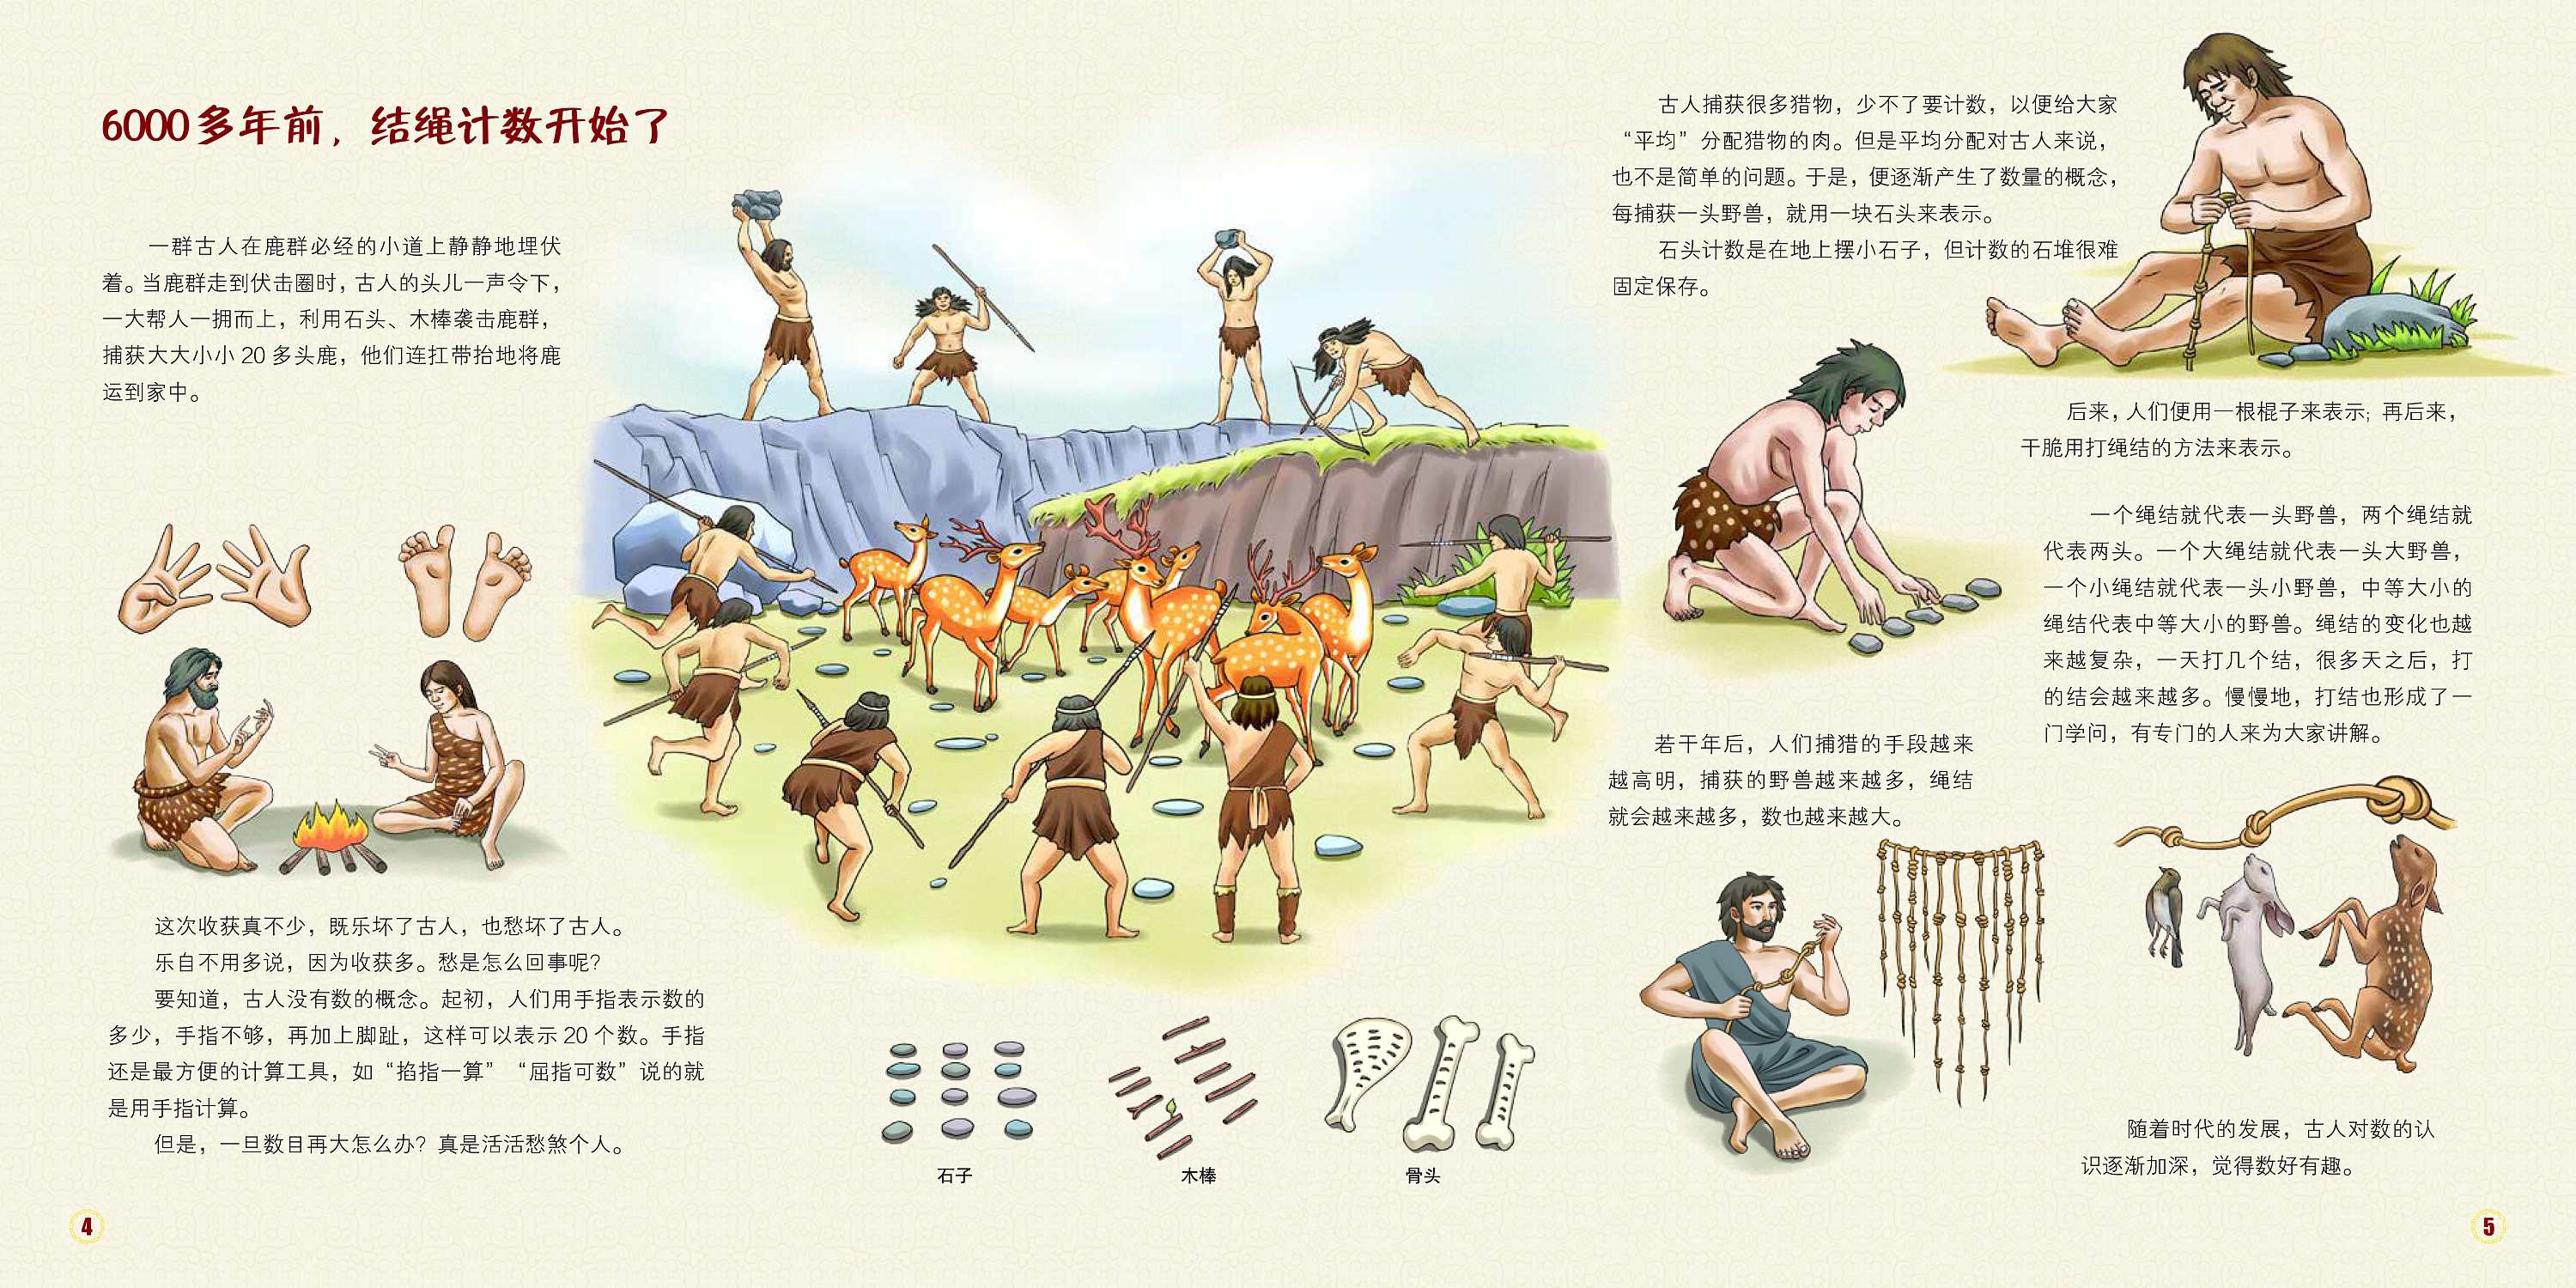 人類的起源(人類的歷史):起源,猿類出現,森林古猿,人的過渡,南方古猿,人類發展,_中文百科全書